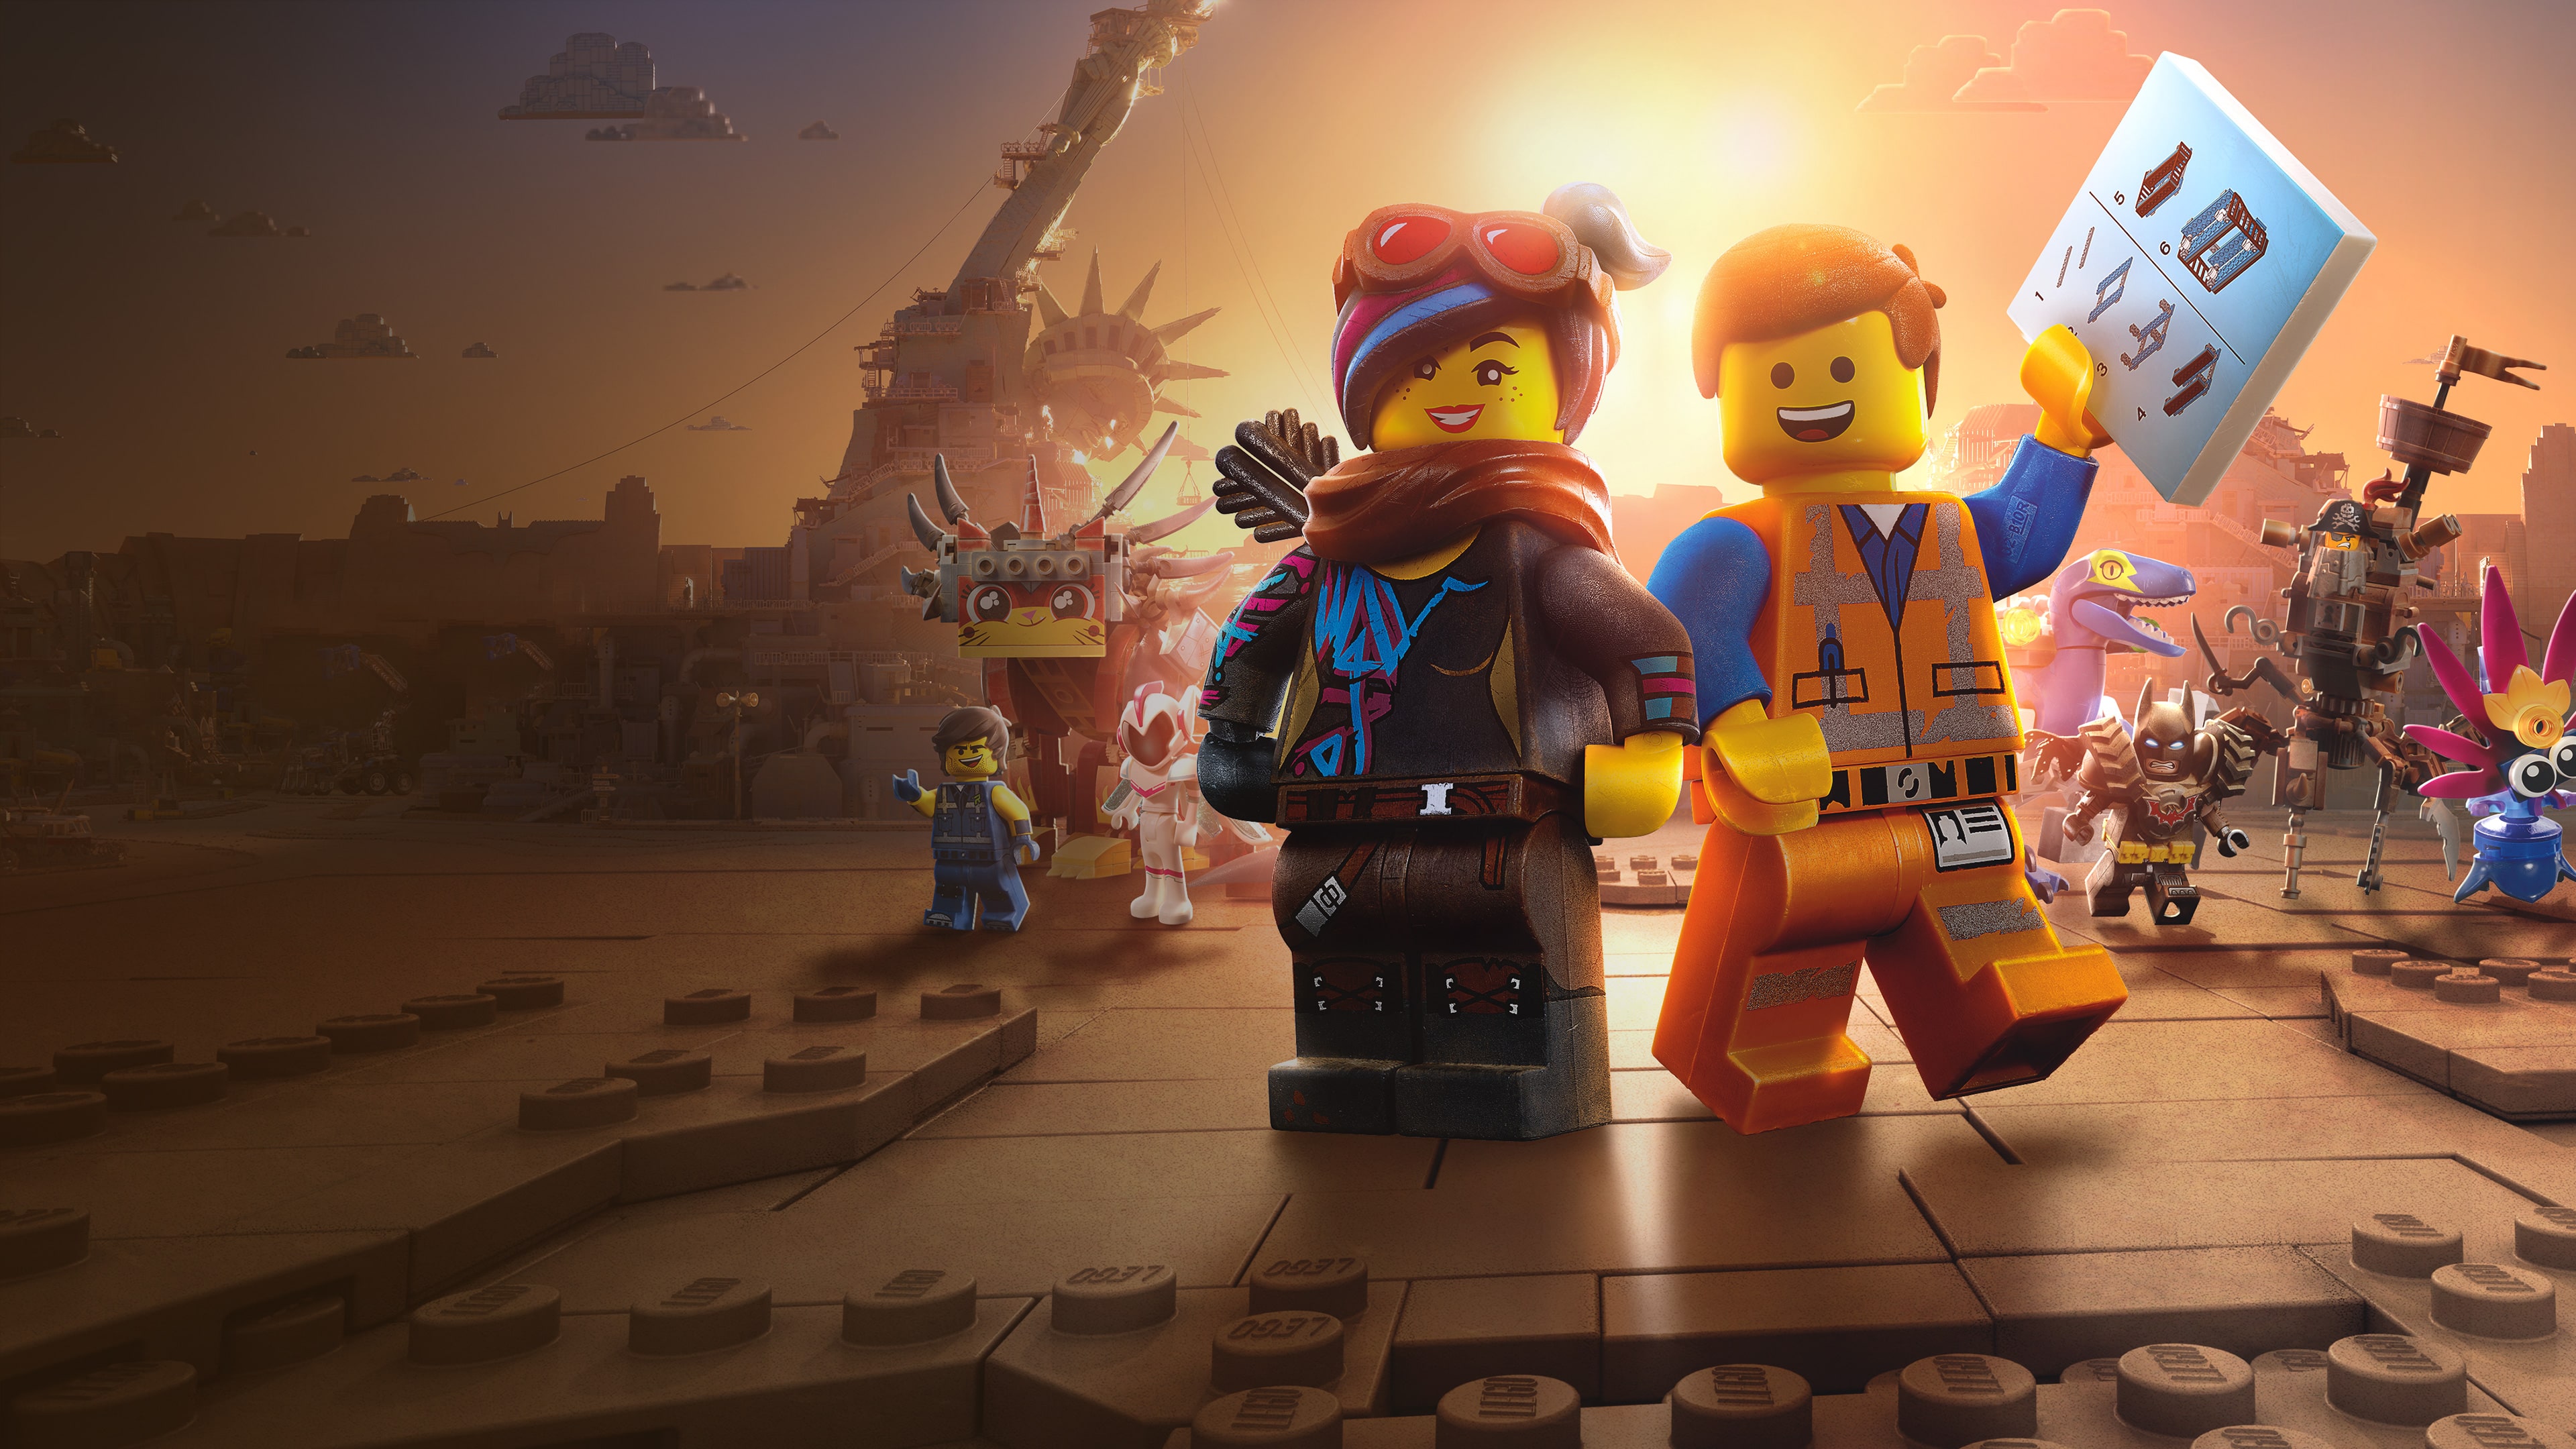 La gran aventura LEGO 2: El videojuego